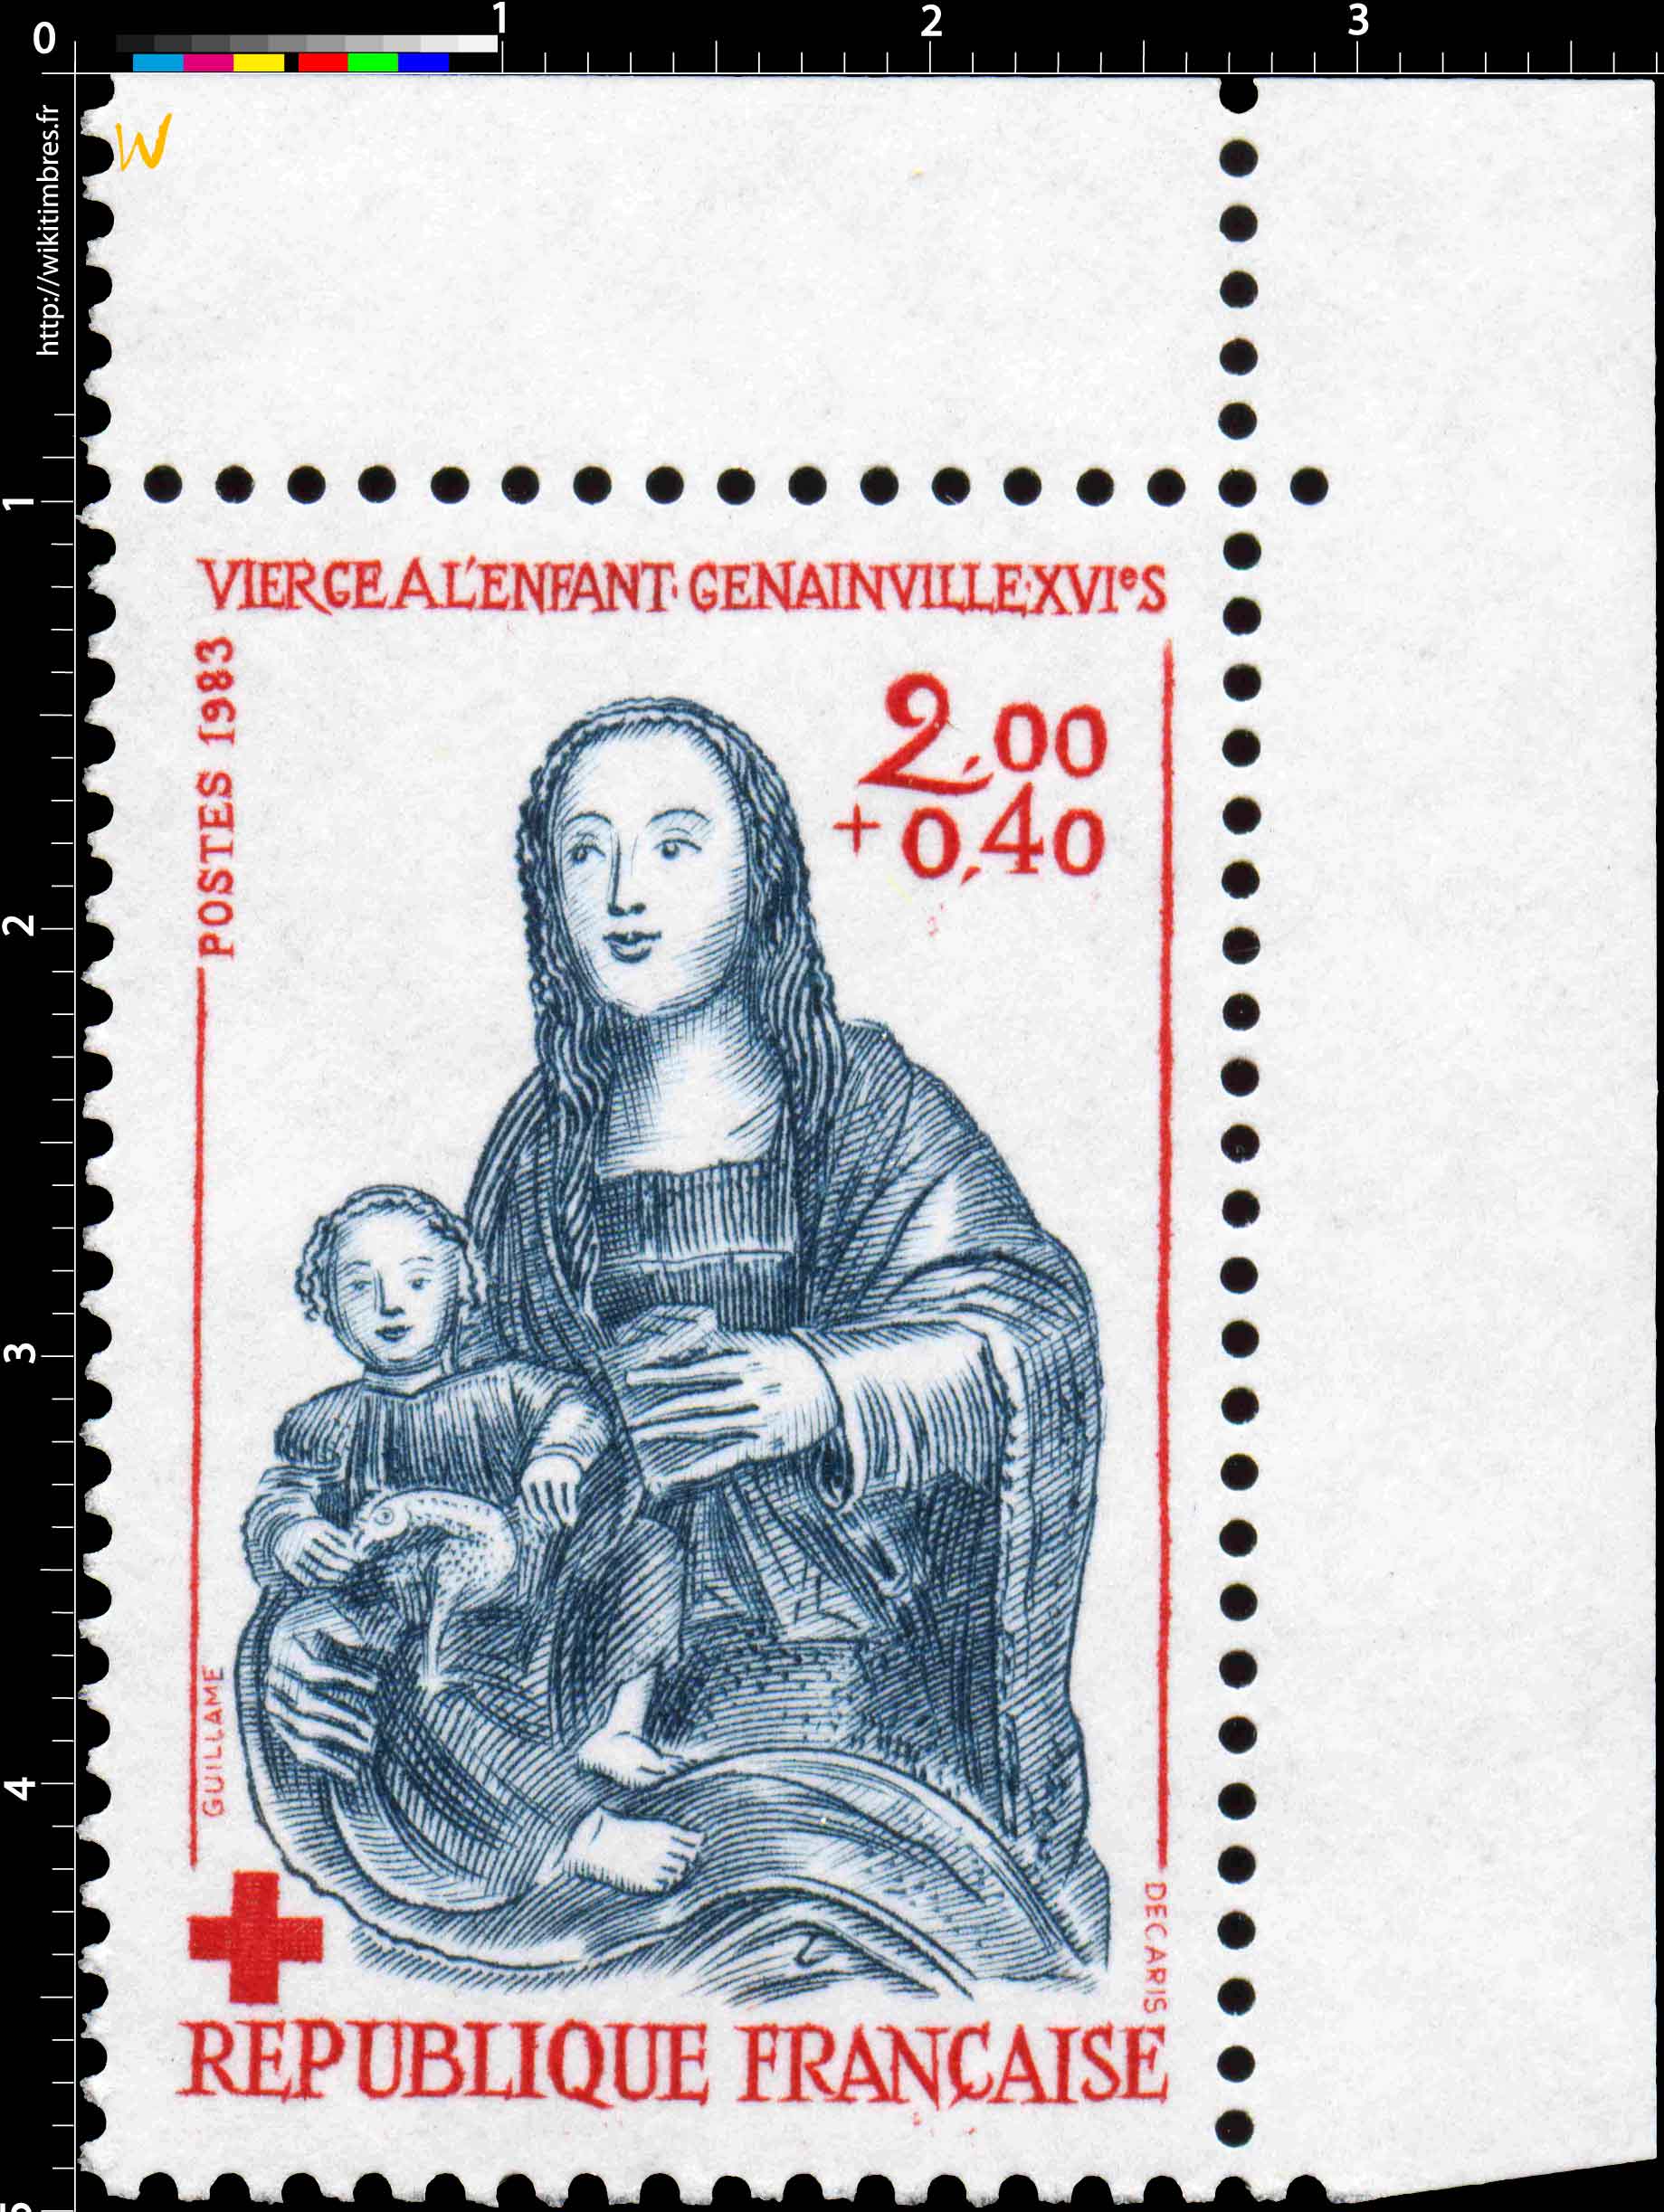 1983 VIERGE À L'ENFANT - GENAINVILLE - XVIe S.